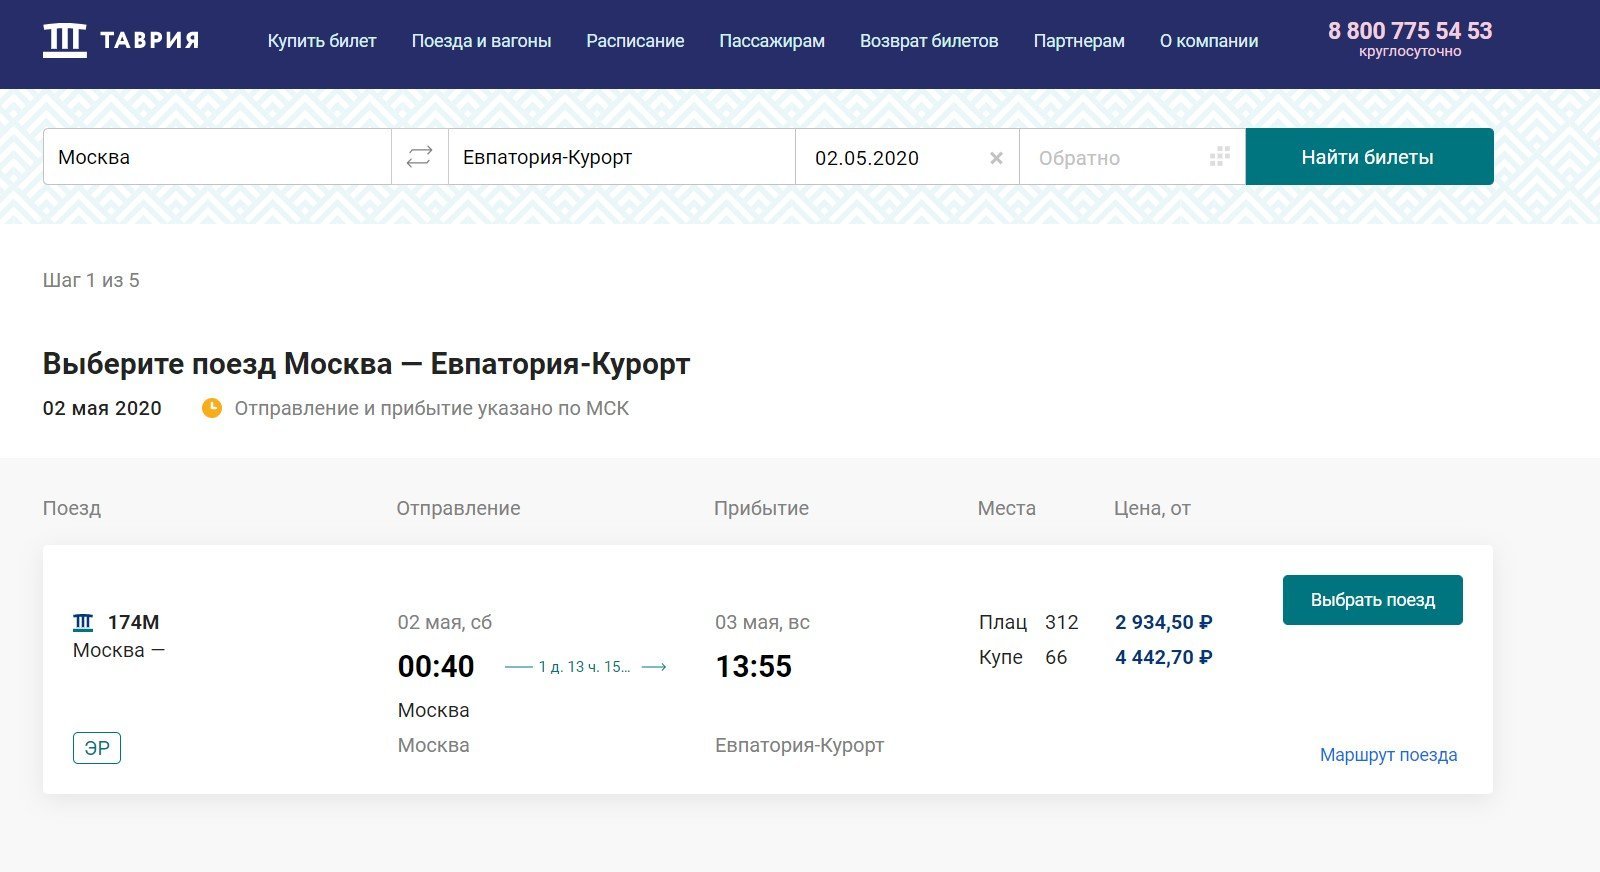 Продажа билетов на поезд Москва - Евпатория